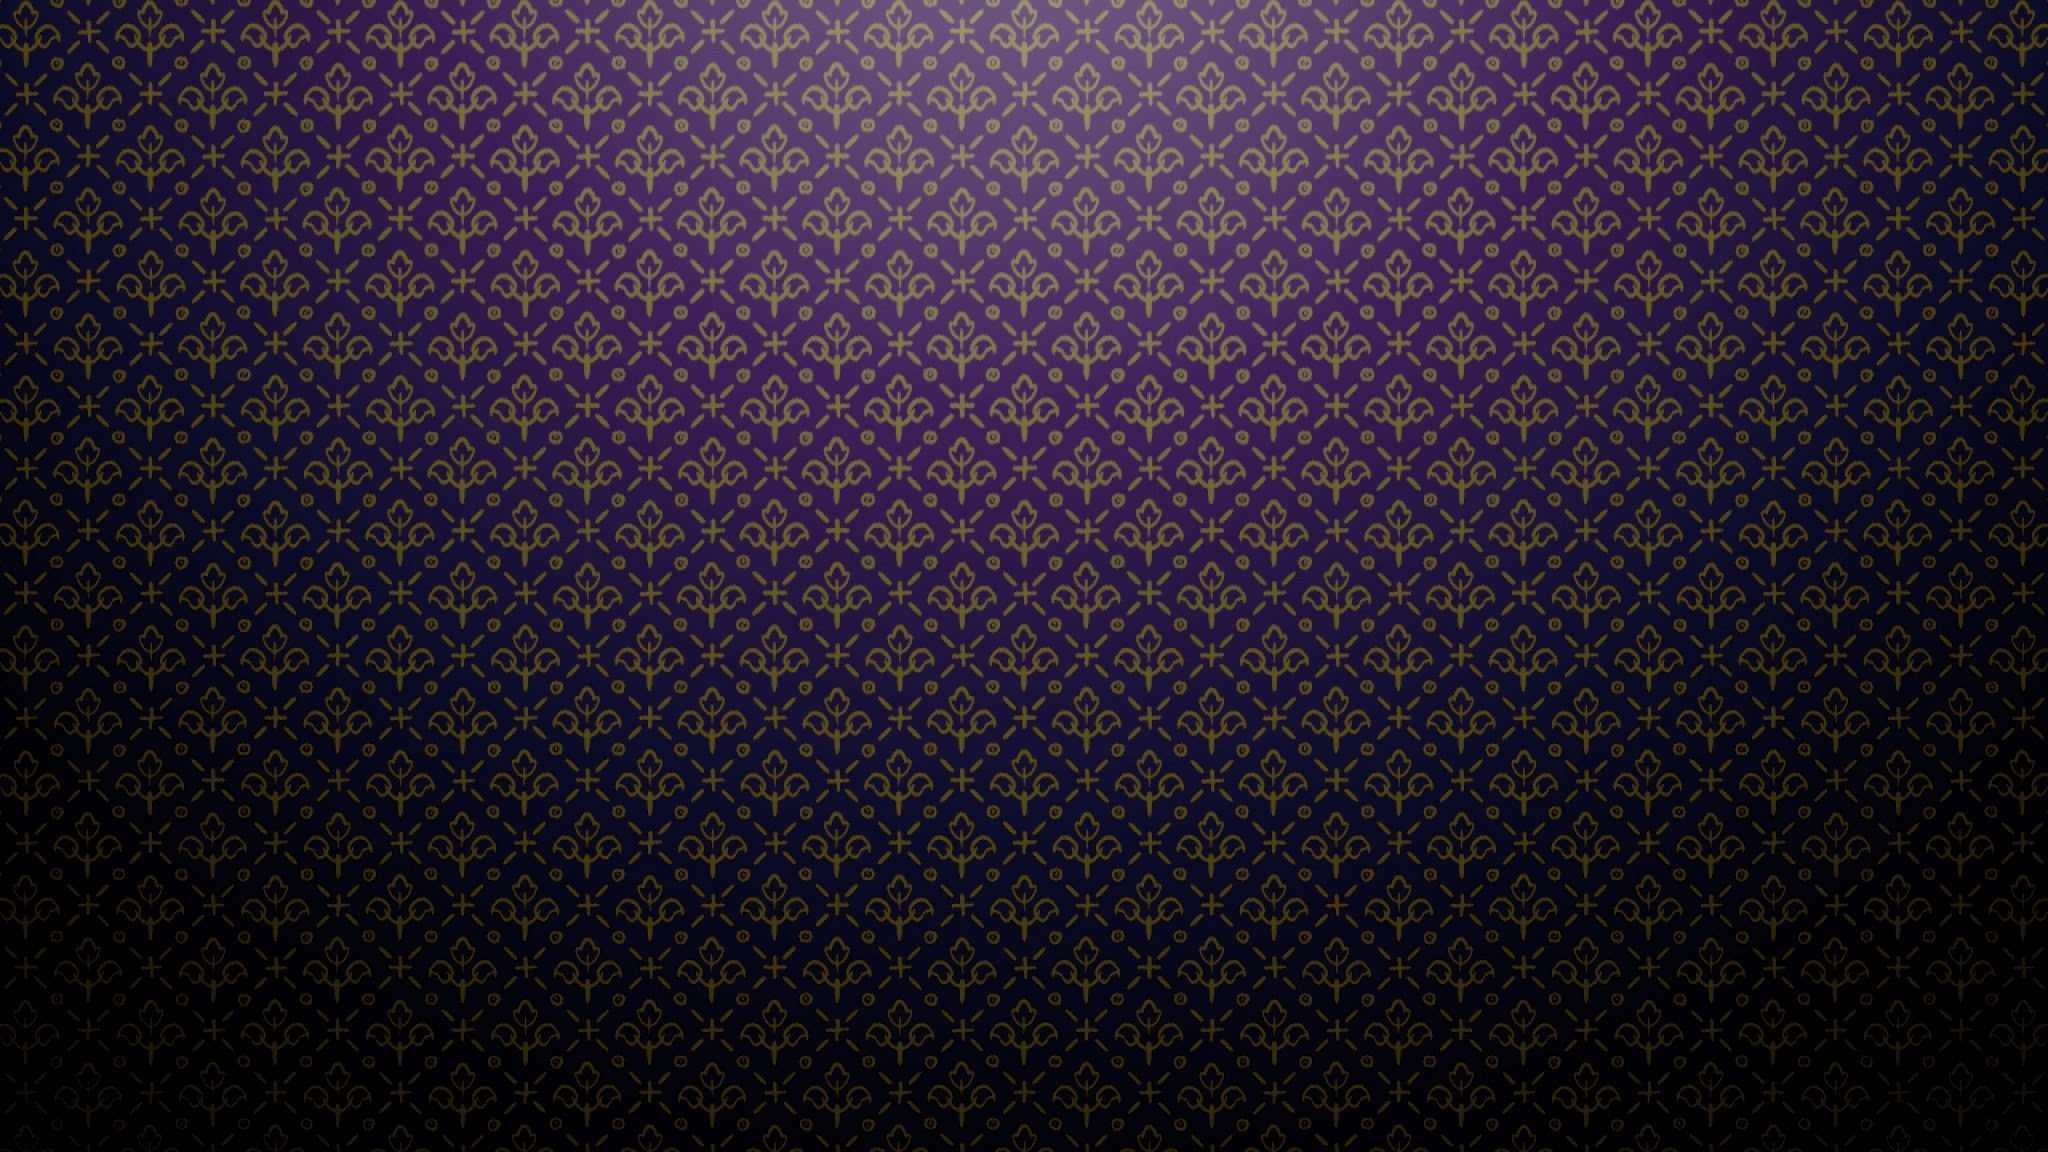 Plain Wallpaper for Desktop Purple (58+ images)